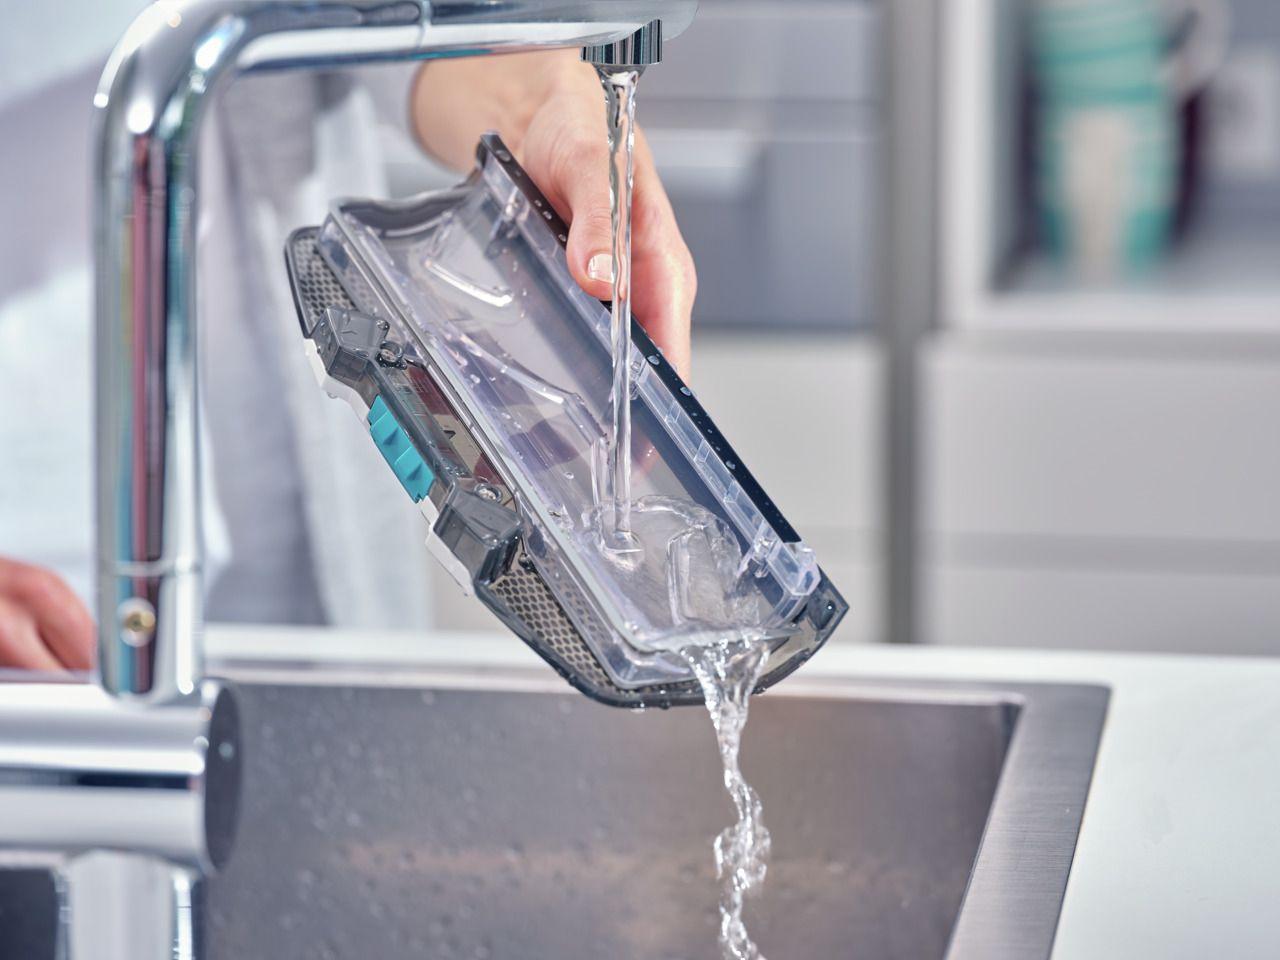 Bezprzewodowy odkurzacz myjący Regulus AquaPowerVac Leifheit